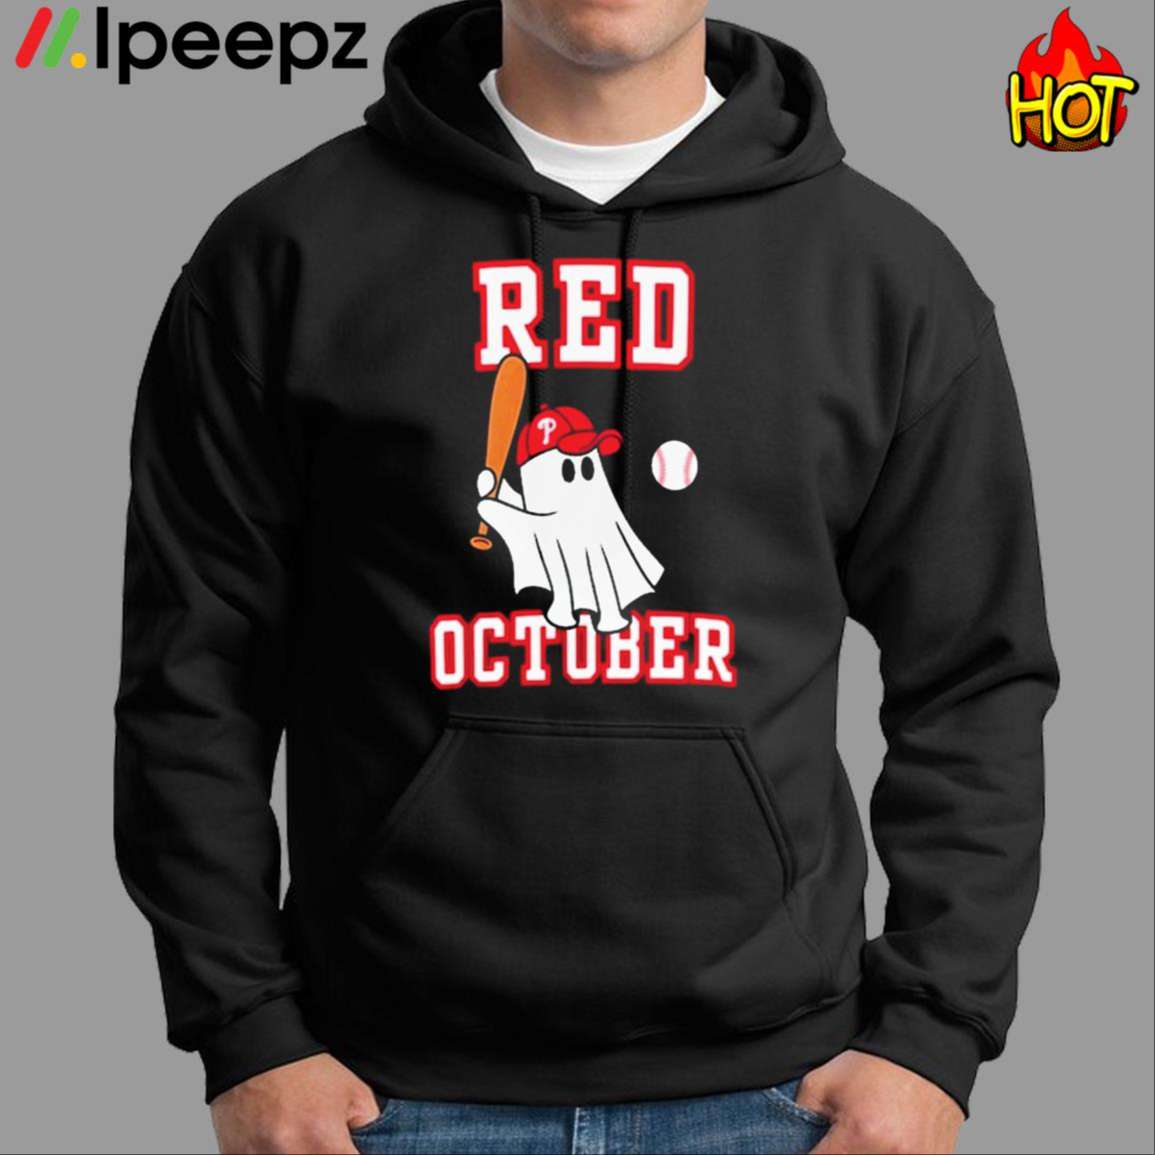 Philadelphia Phillies Red October Returns Shirt - Ipeepz